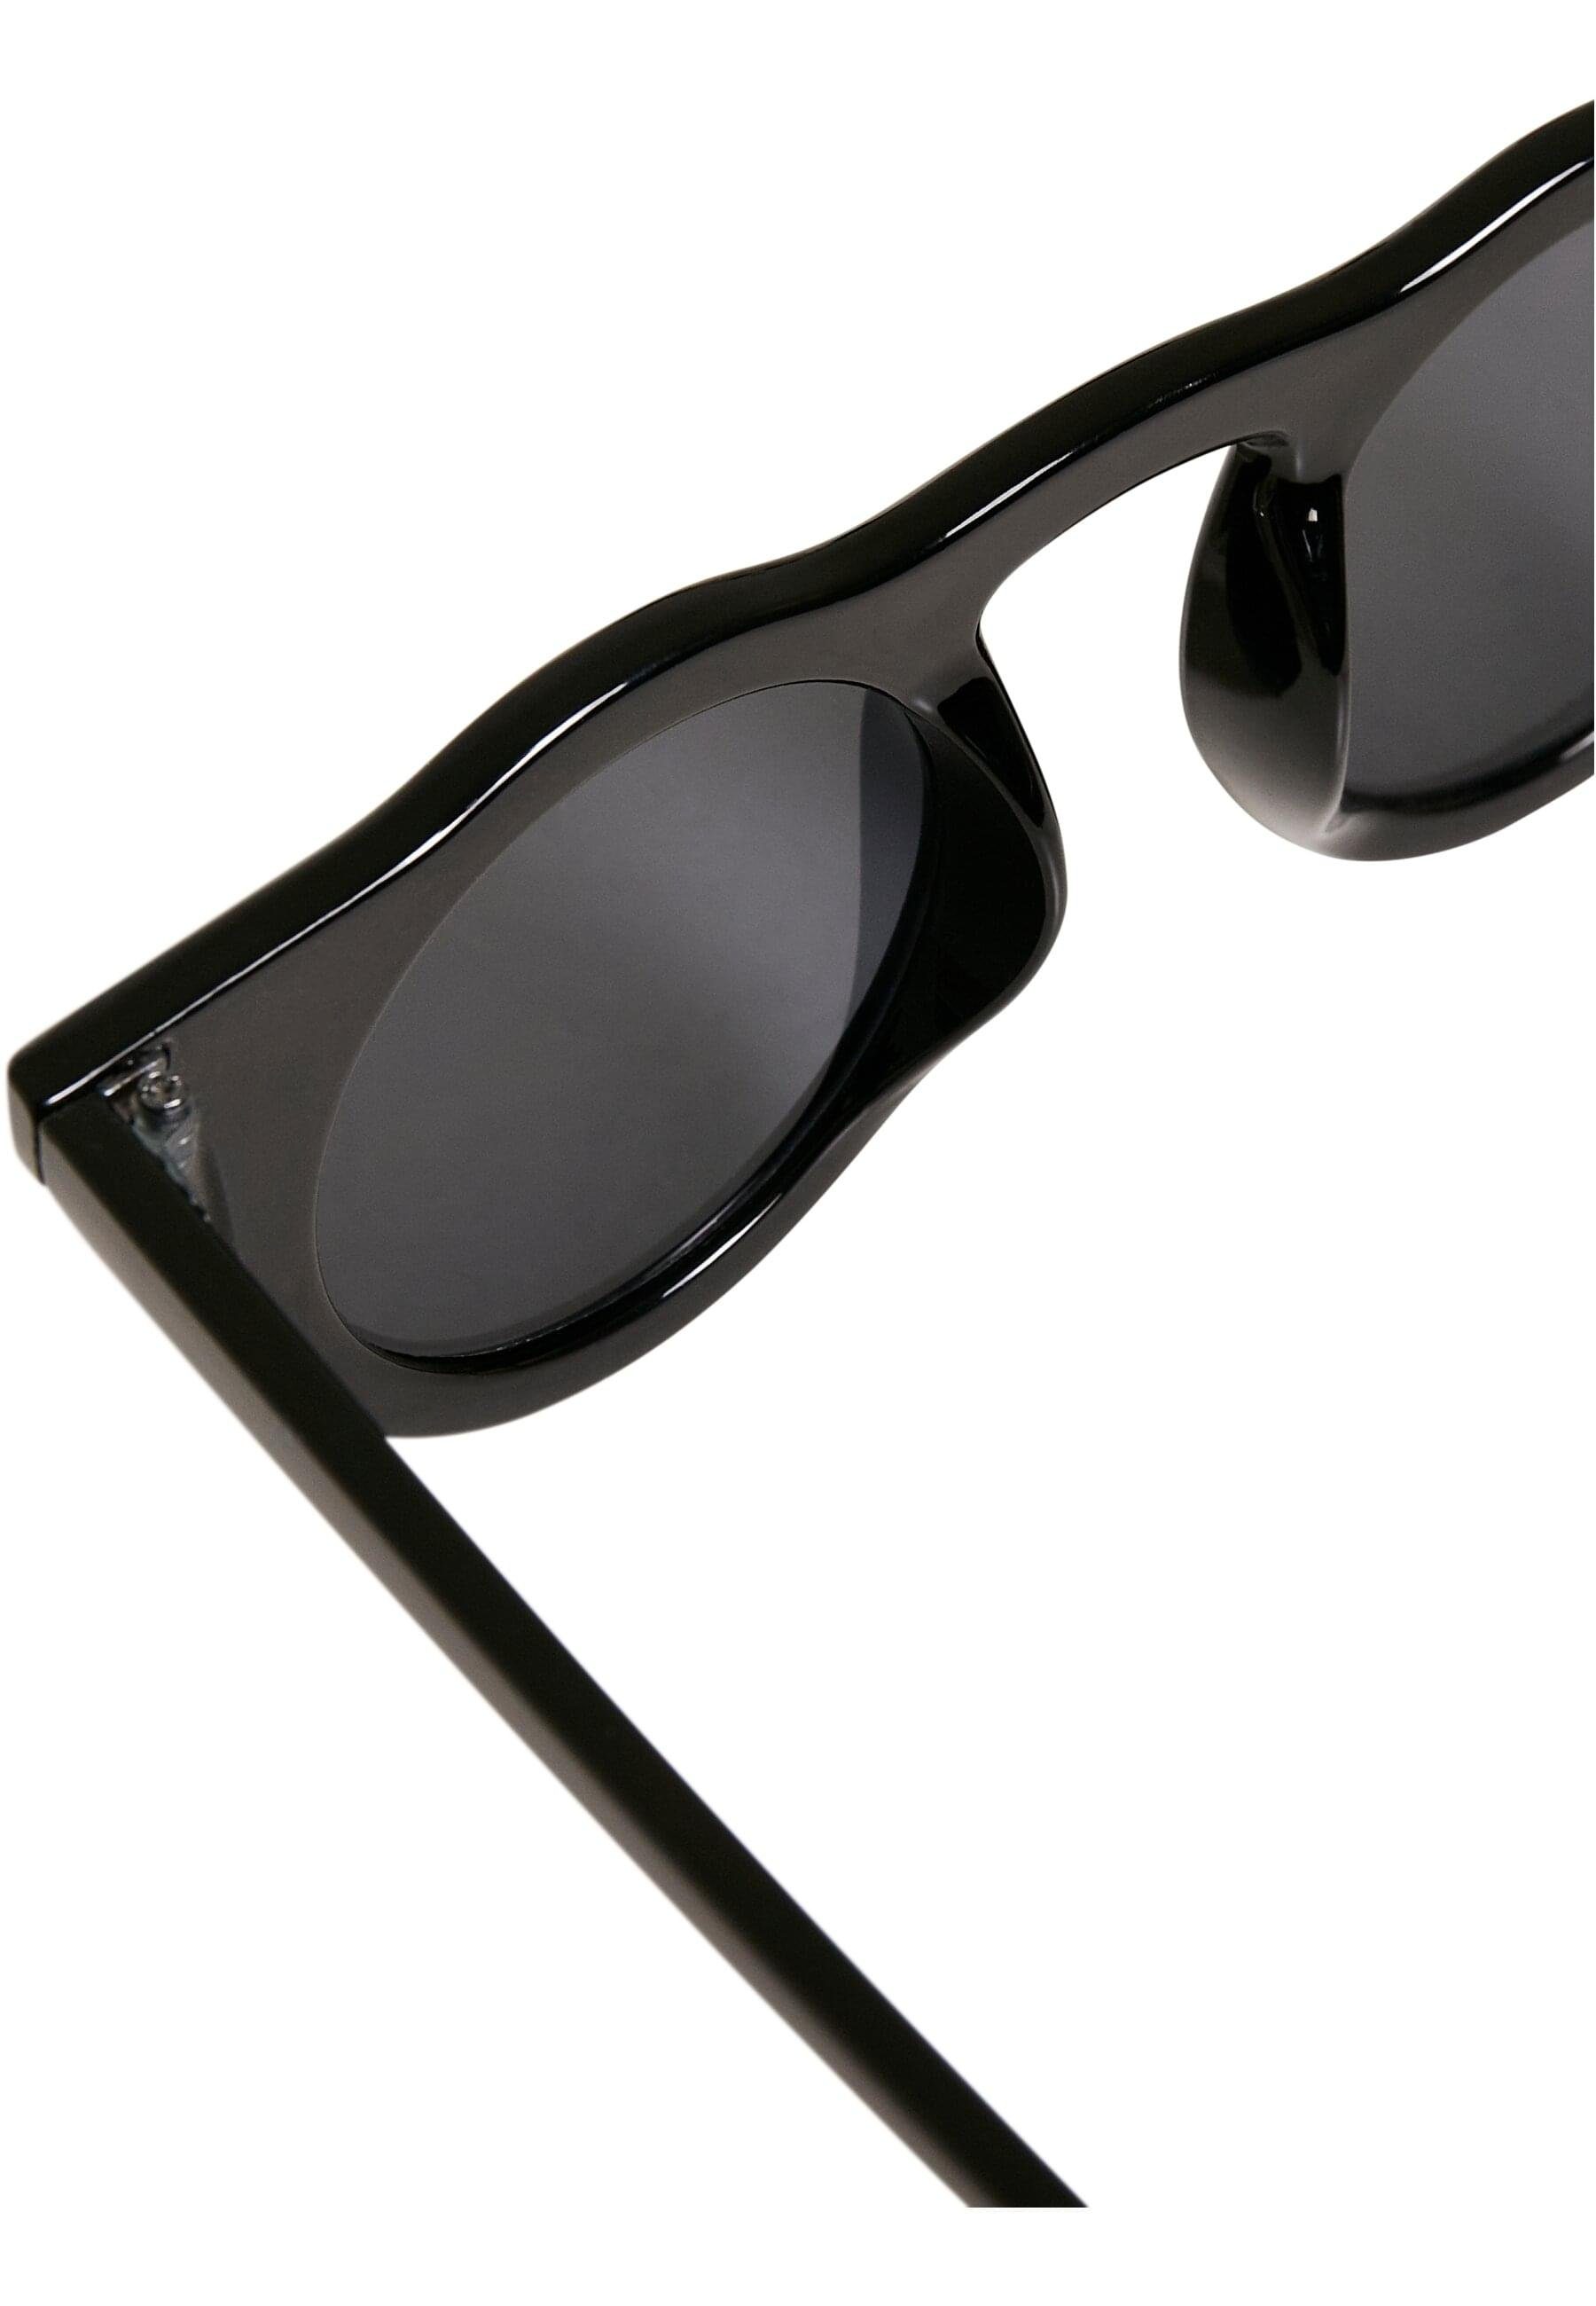 Unisex Sunglasses CLASSICS Sonnenbrille Malta URBAN